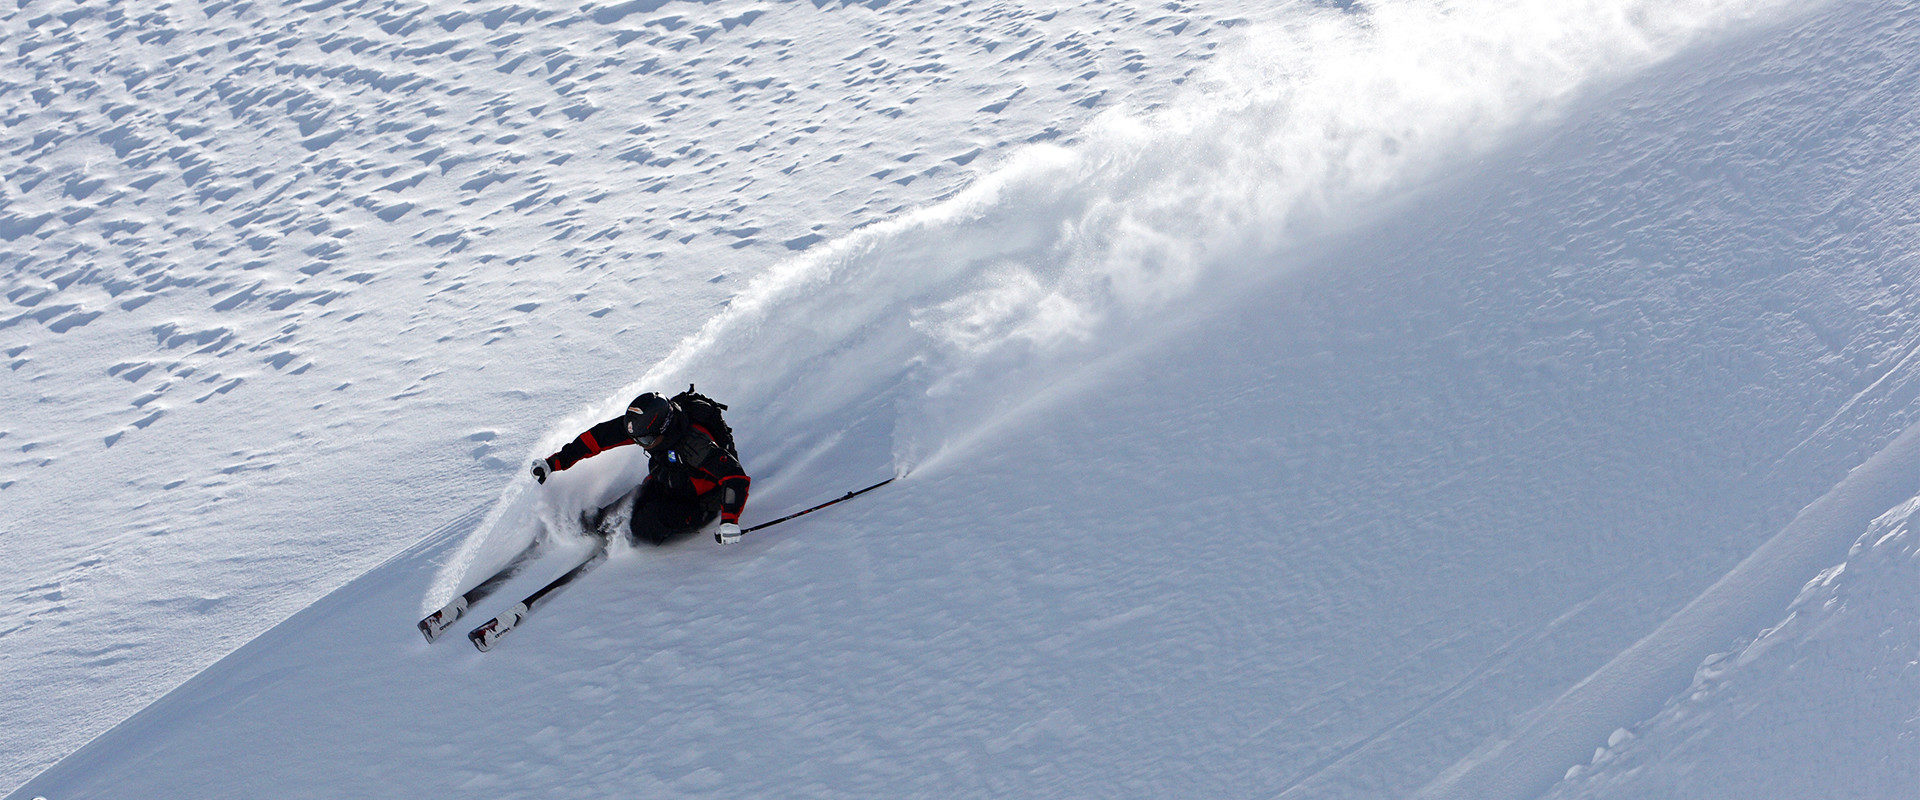 Hannes Rottensteiner beim Freeriden im freien Skigelände mit staubender Schneefahne